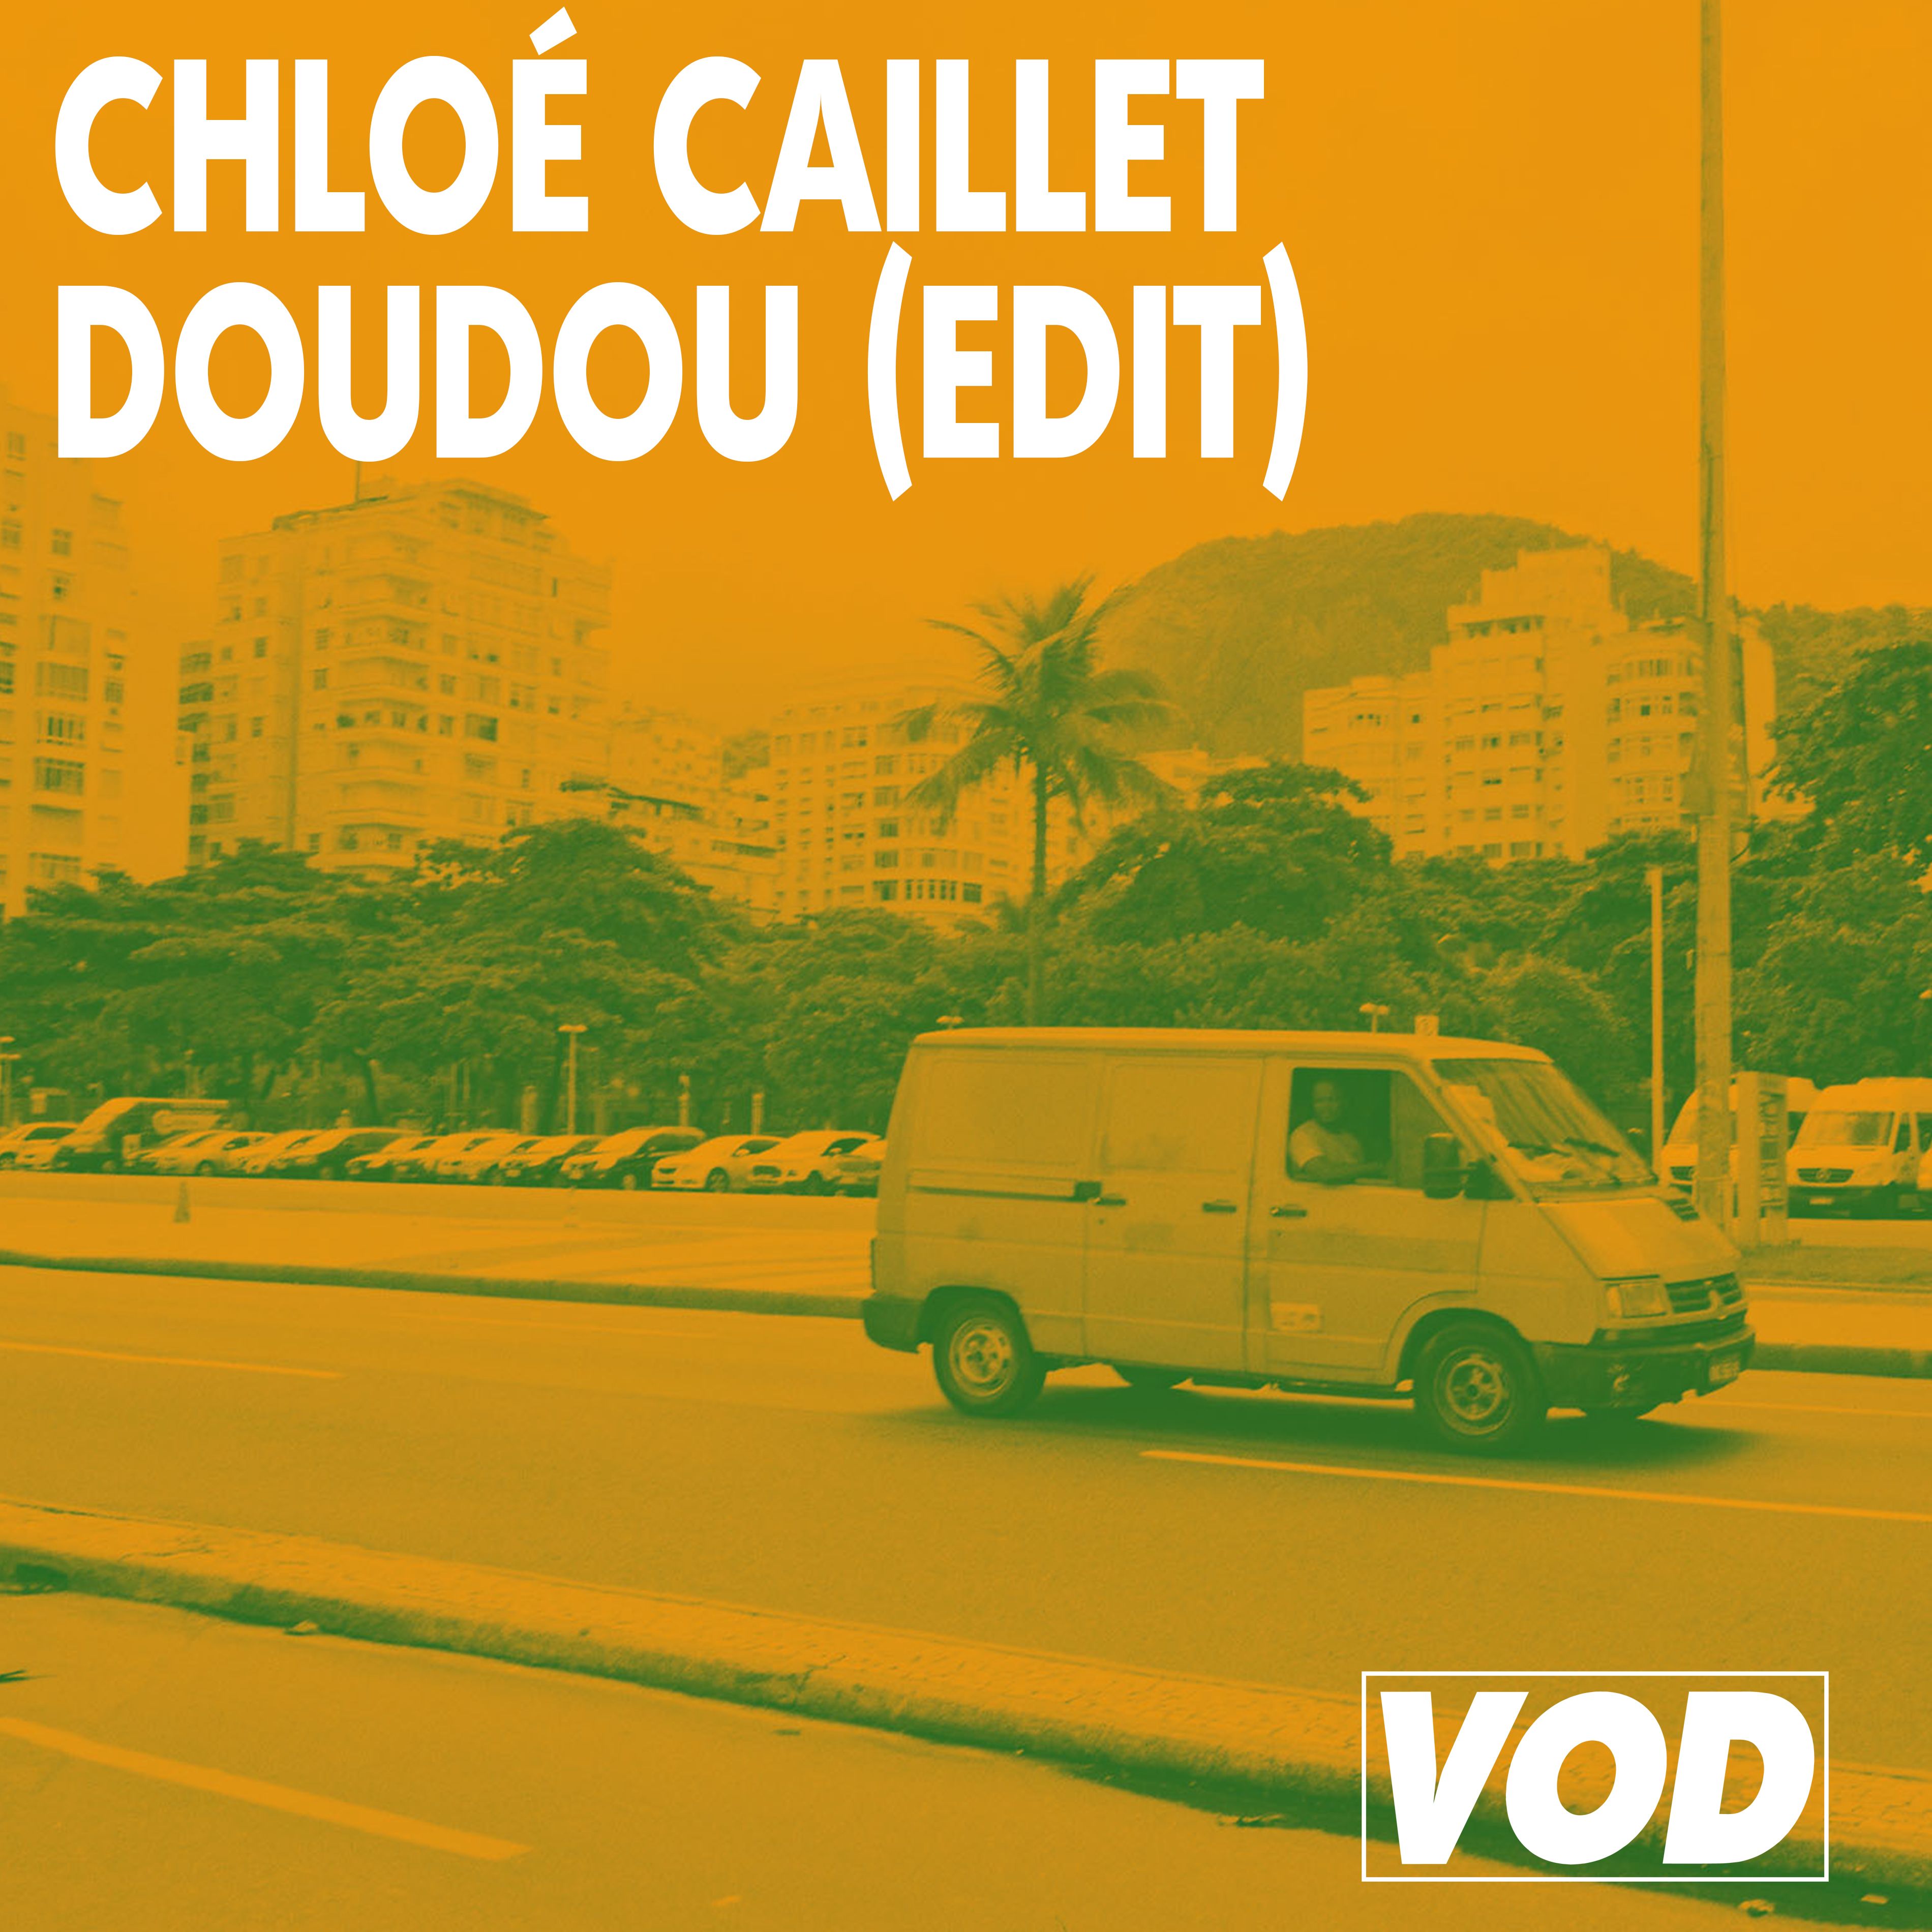 डाउनलोड करा Chloé Caillet - Doudou (Edit)